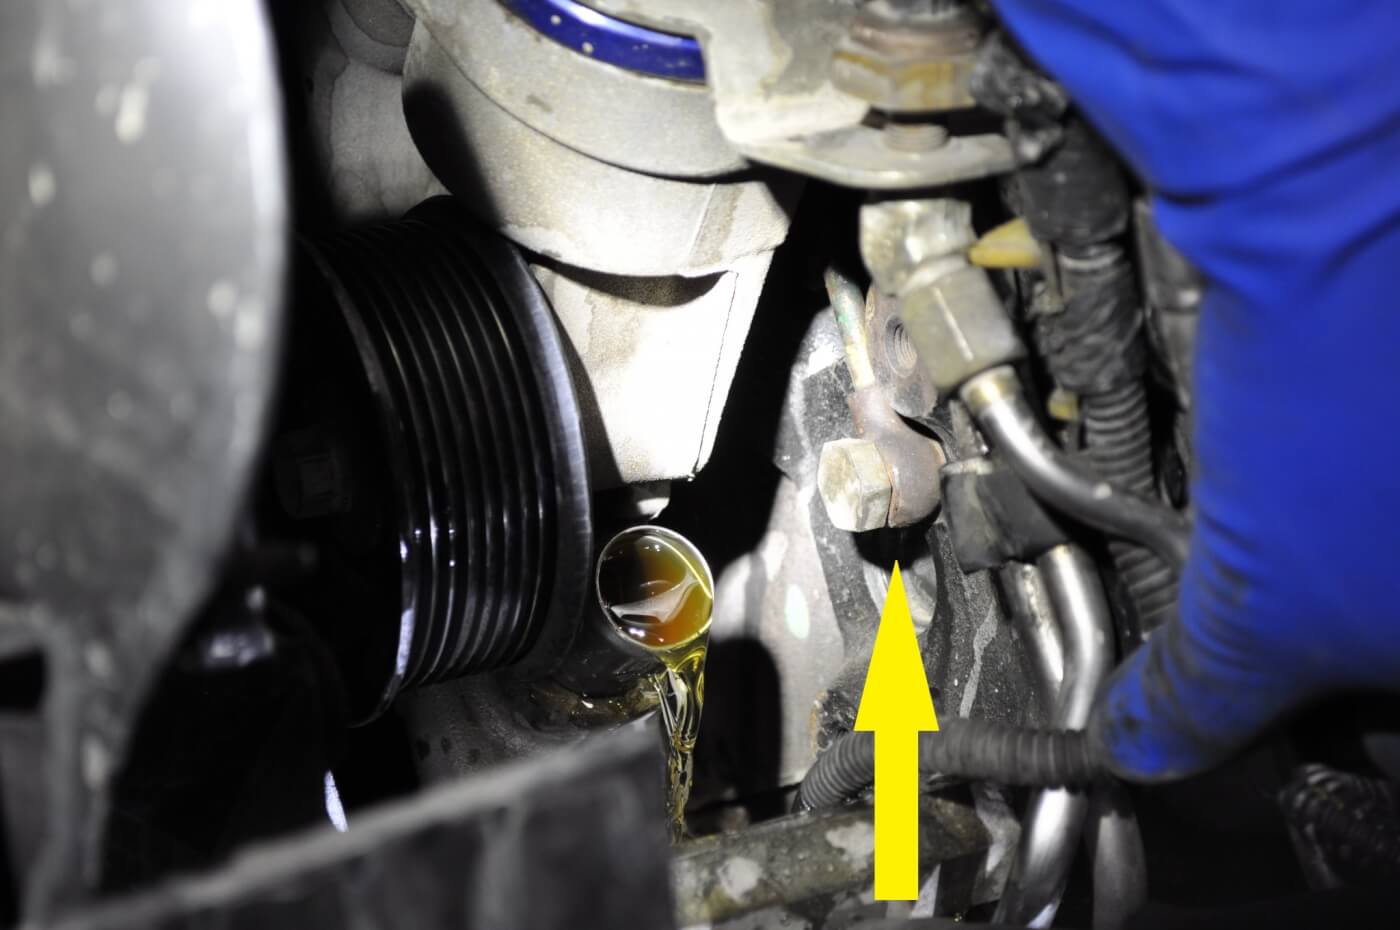 Fuel leak on passenger side of engine - Ford Powerstroke Diesel Forum 6.7 Powerstroke Fuel Leak Passenger Side